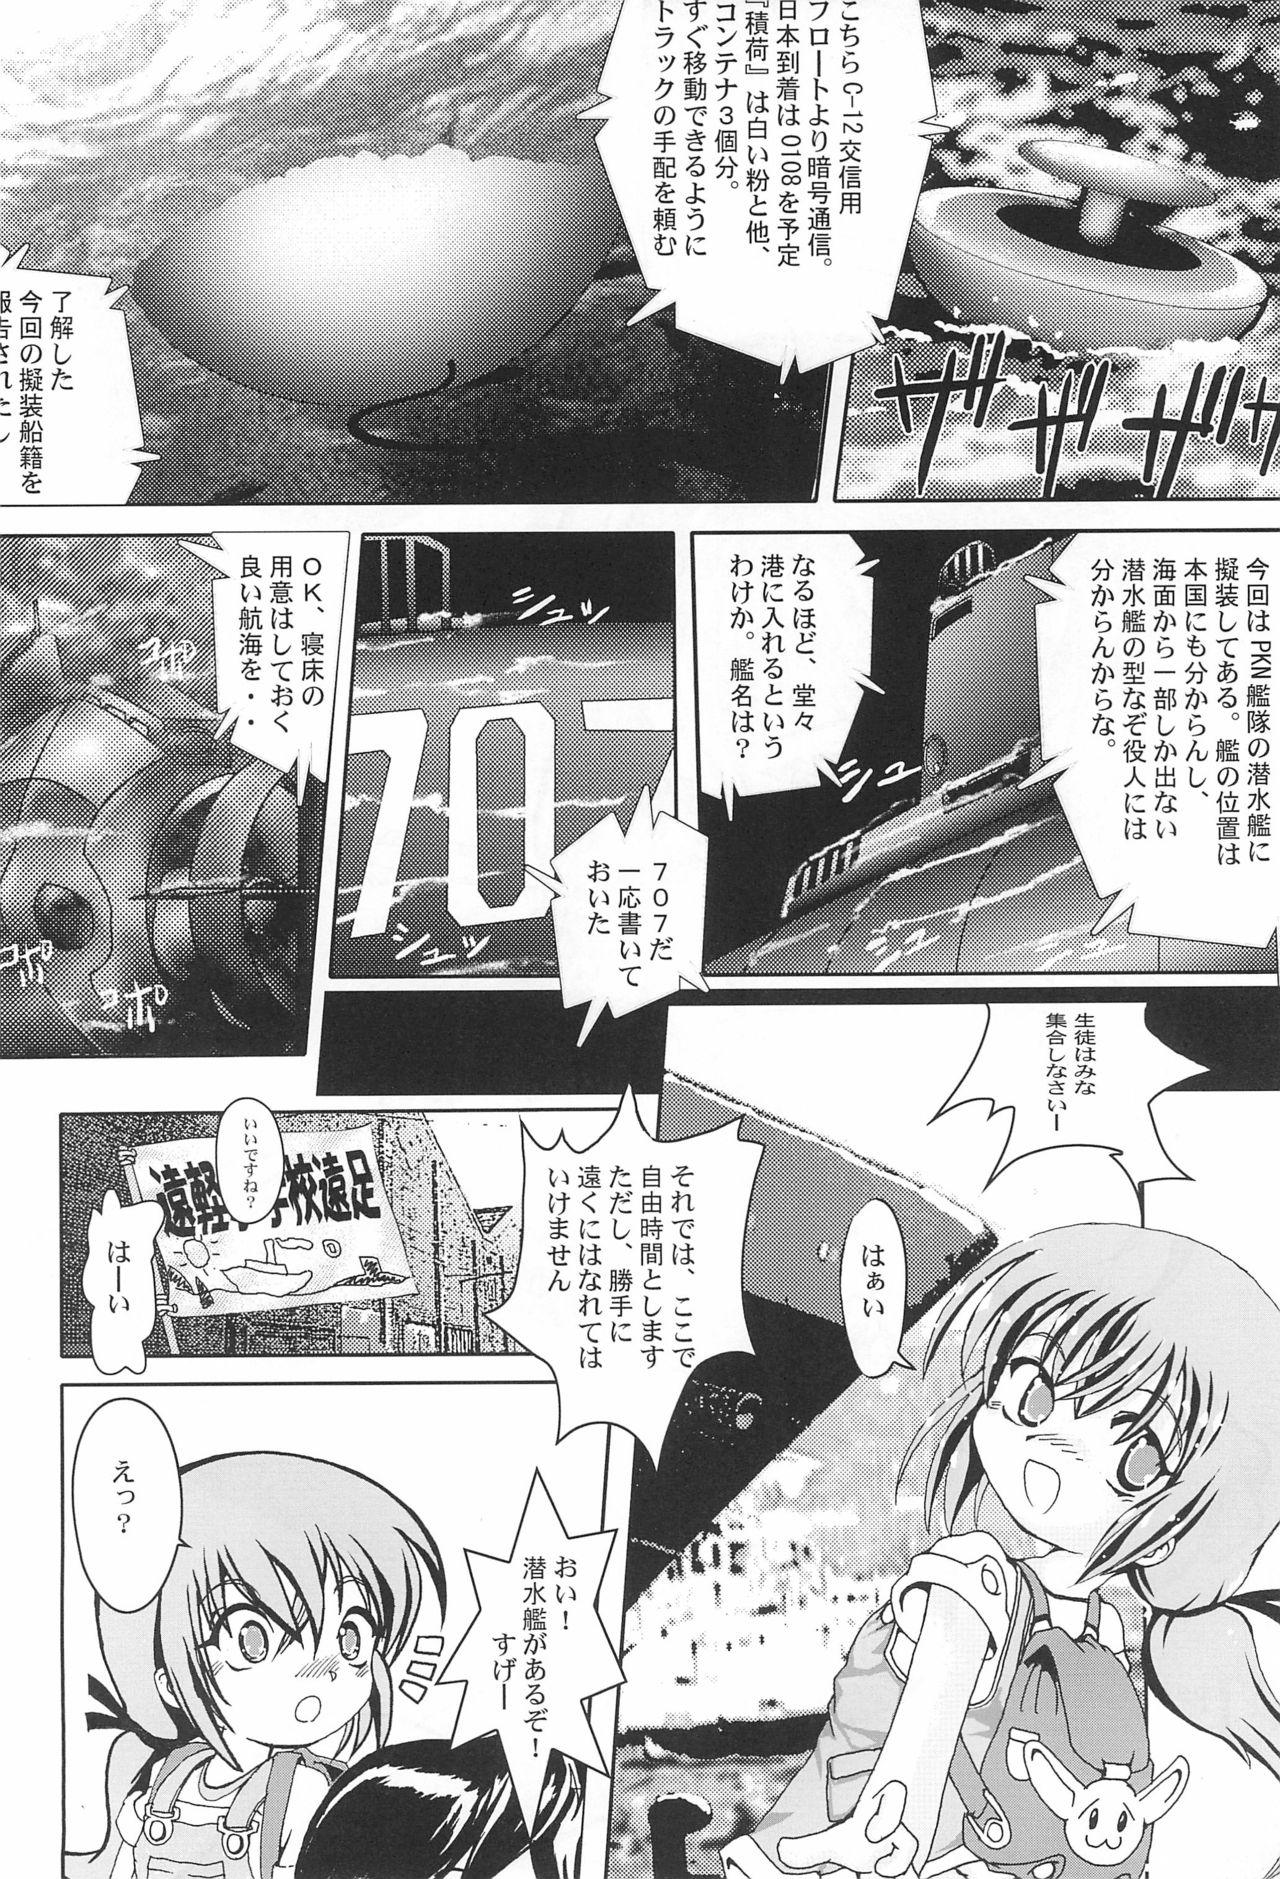 Manga Science 5 59